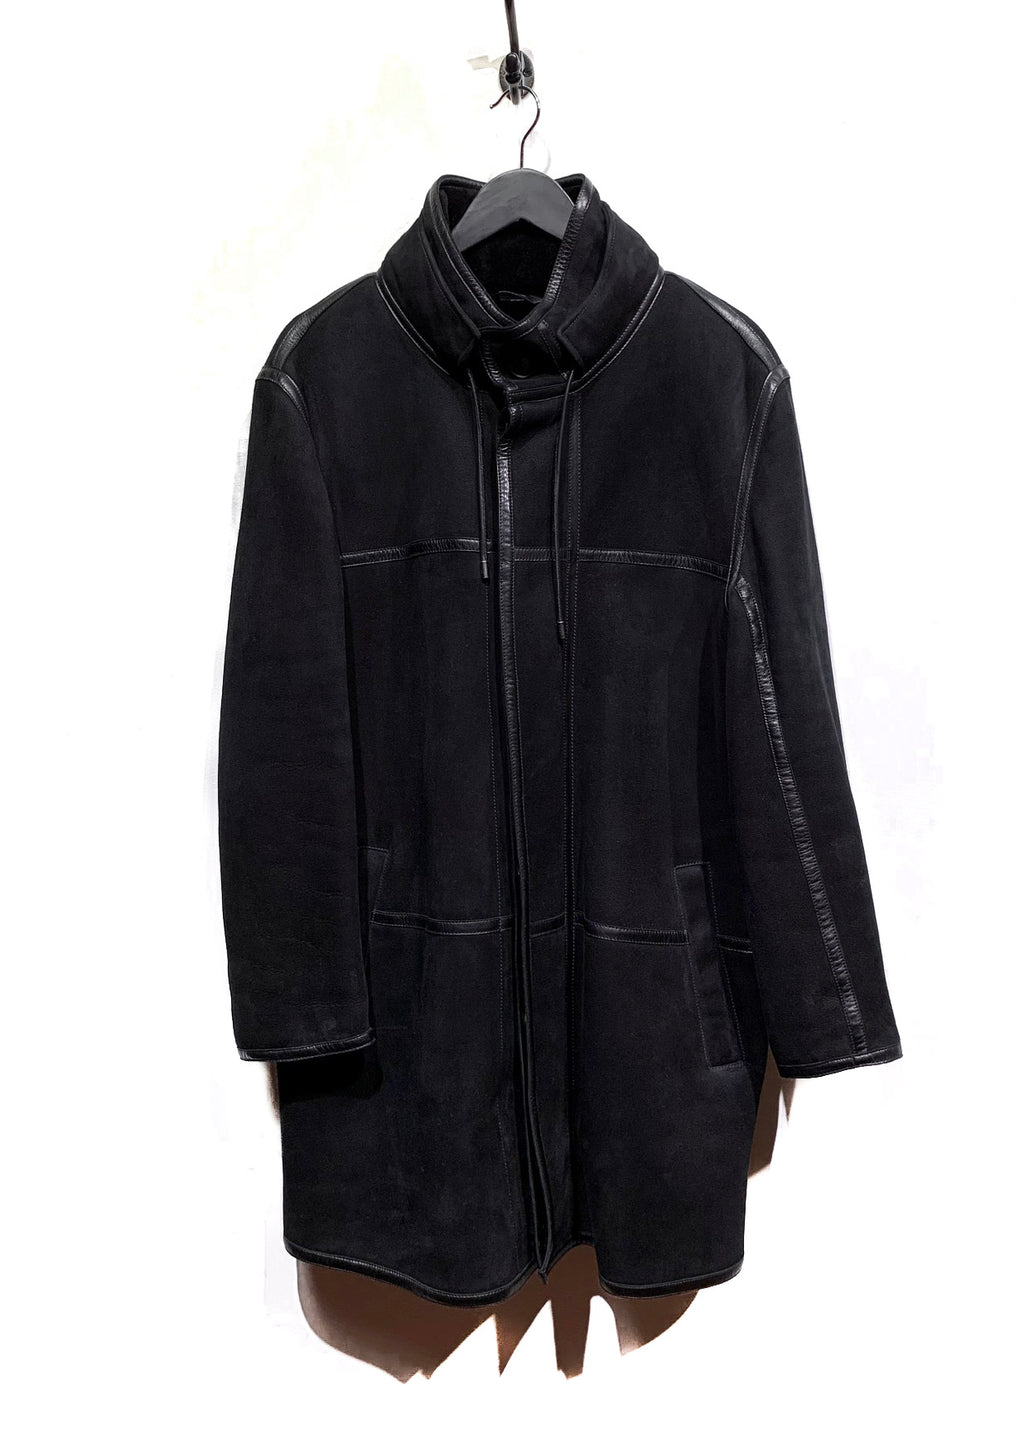 Manteau en peau de mouton retournée avec finitions en cuir noir Fendi